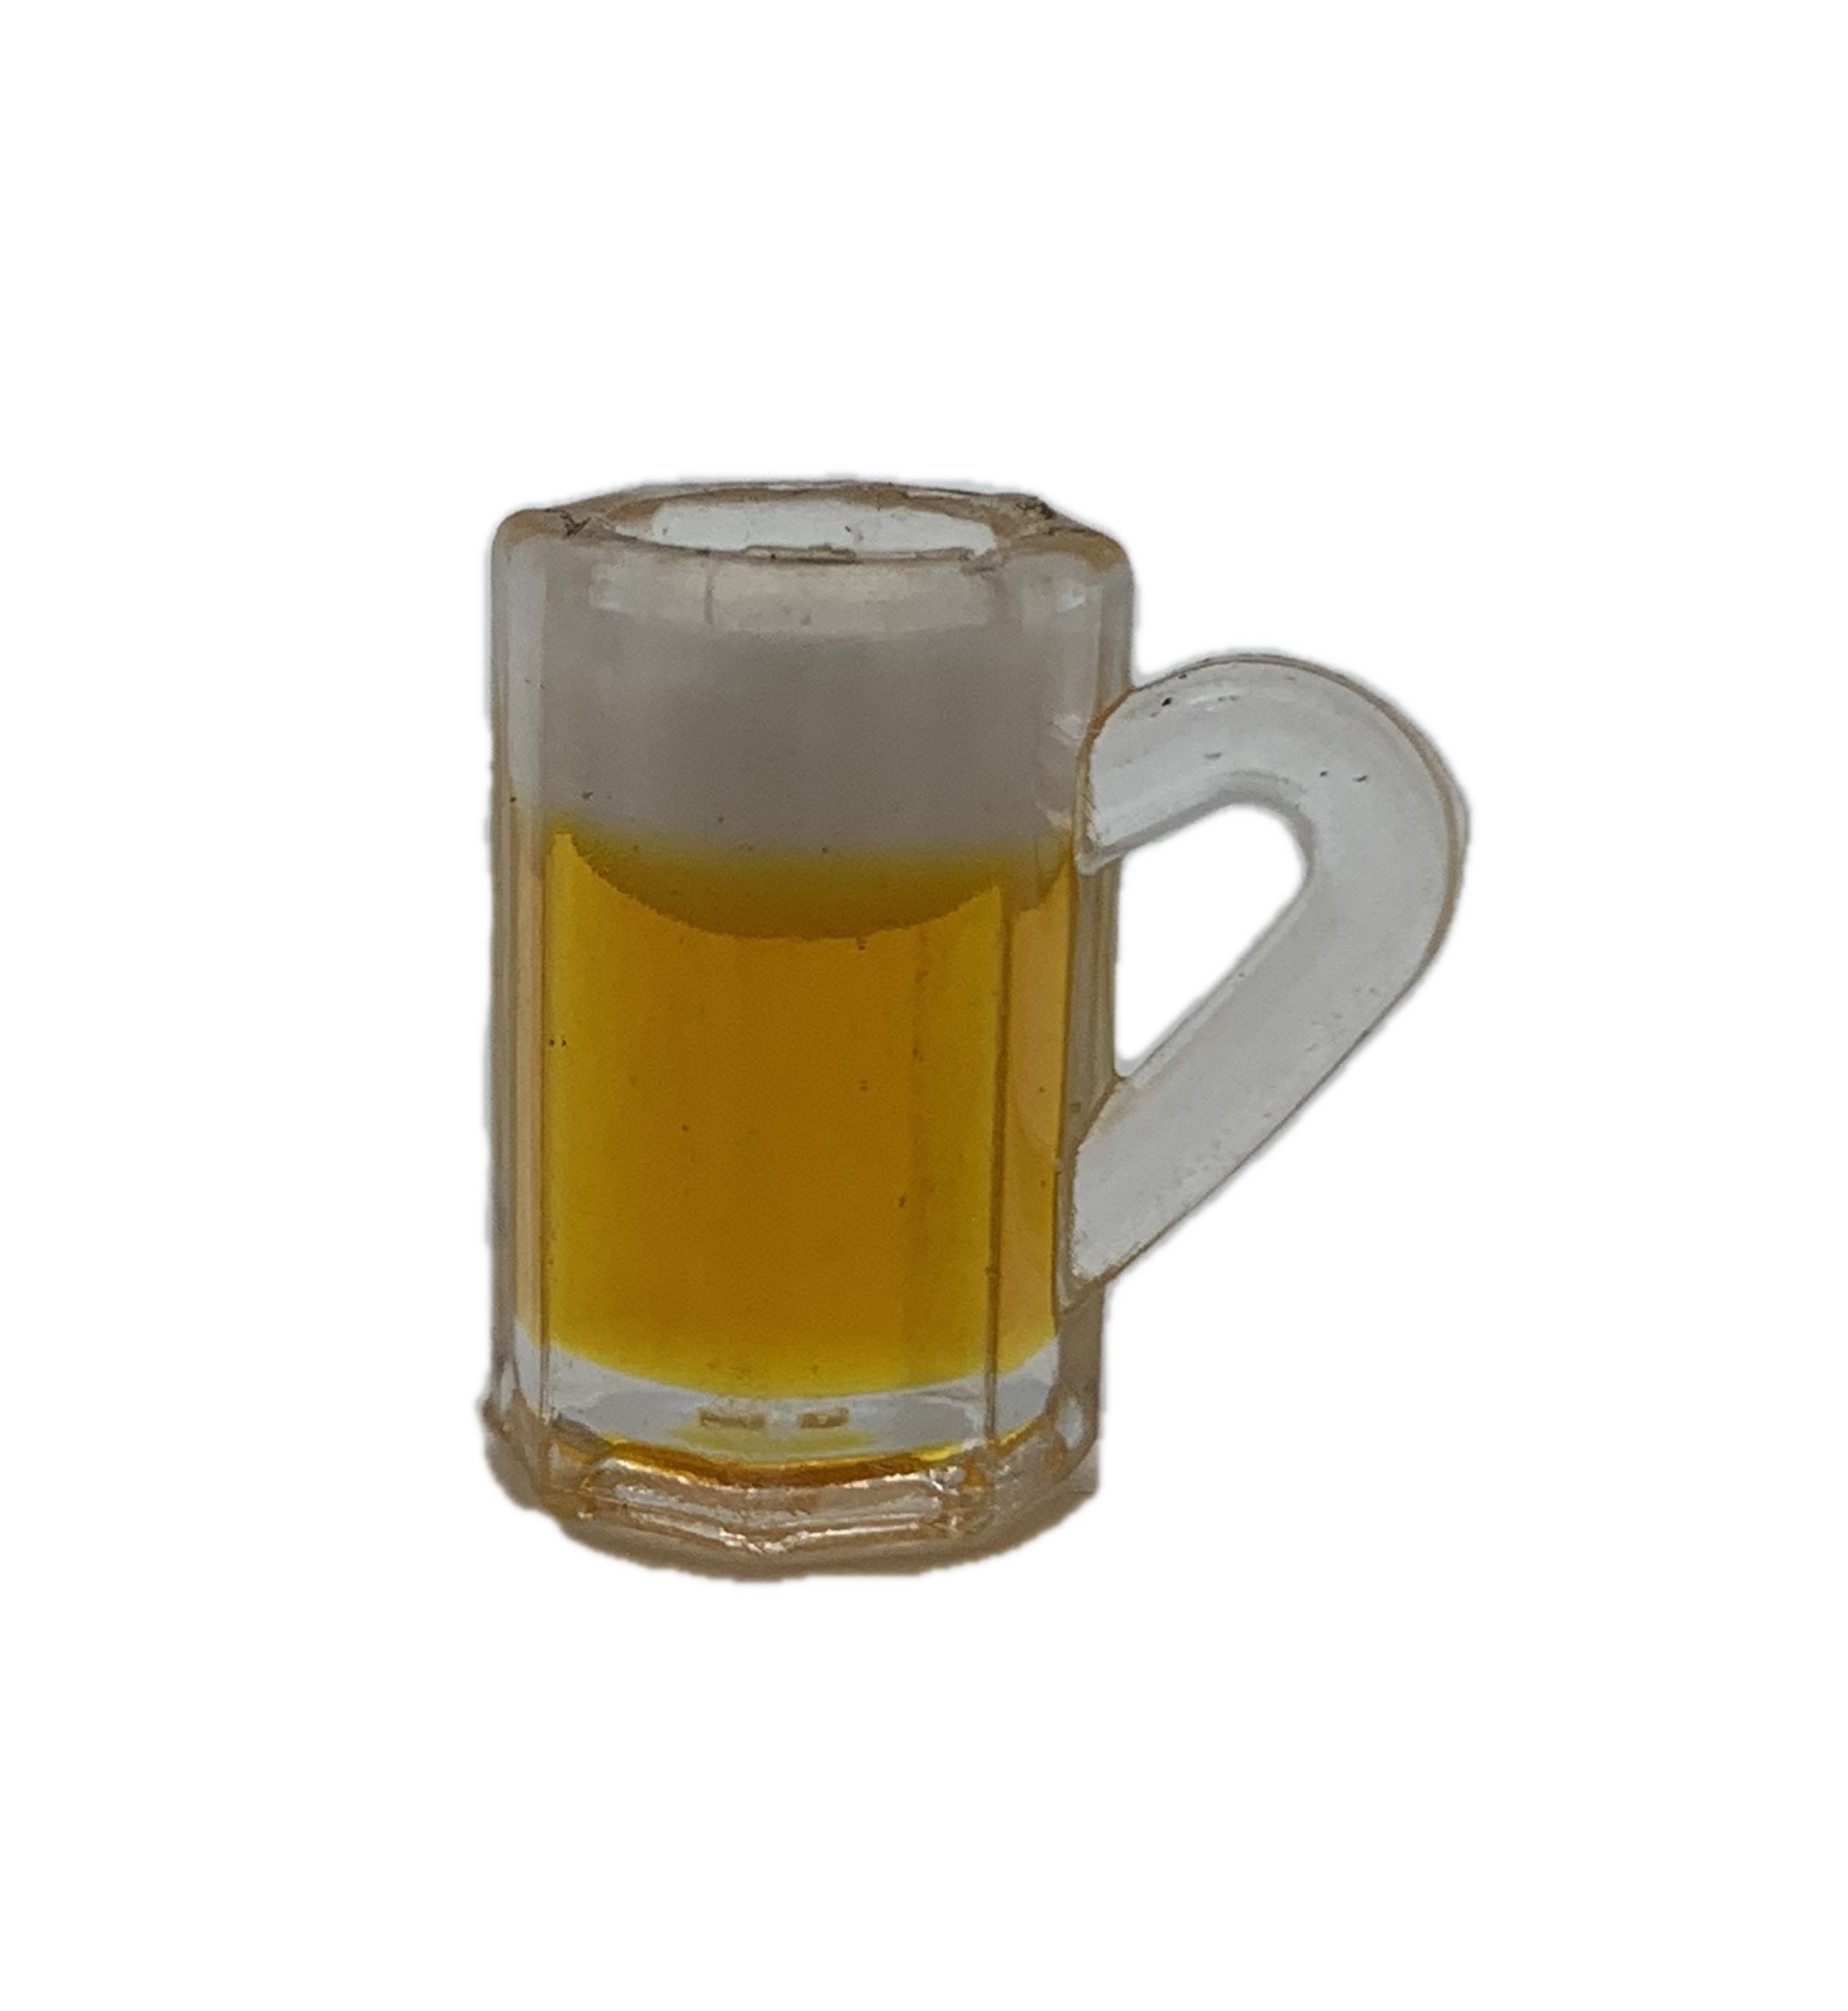 2 Pcs Miniatur Bierkrug Bierglas mit Bier für Puppenstube Maßstab 1:12 